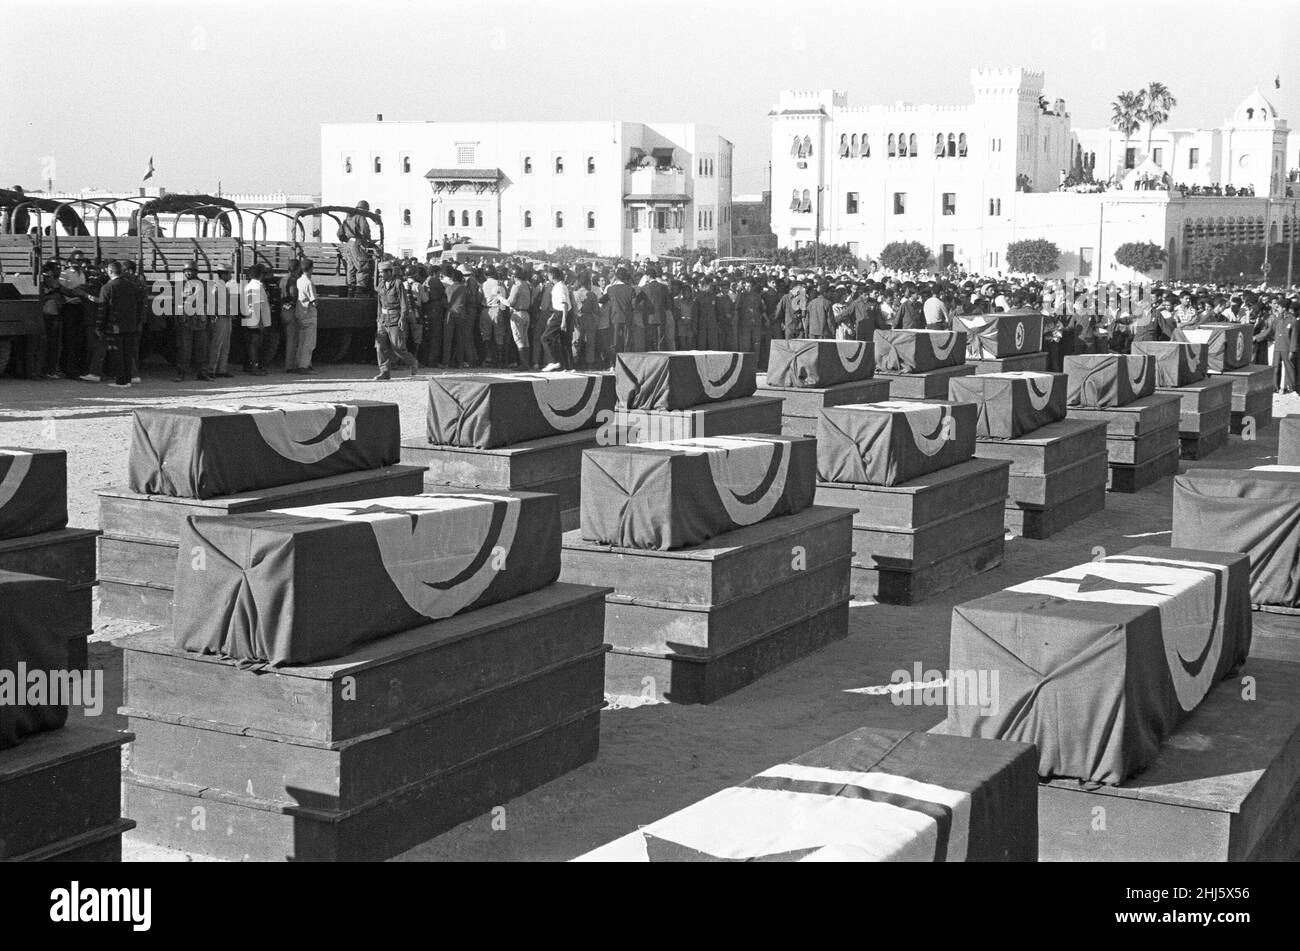 La crise de Bizerte 1961Coffins des victimes de la bataille de Bizerte vu  ici à un service funéraire à Tunis.24 juillet 1961 la crise est apparue  après que les forces tunisiennes ont